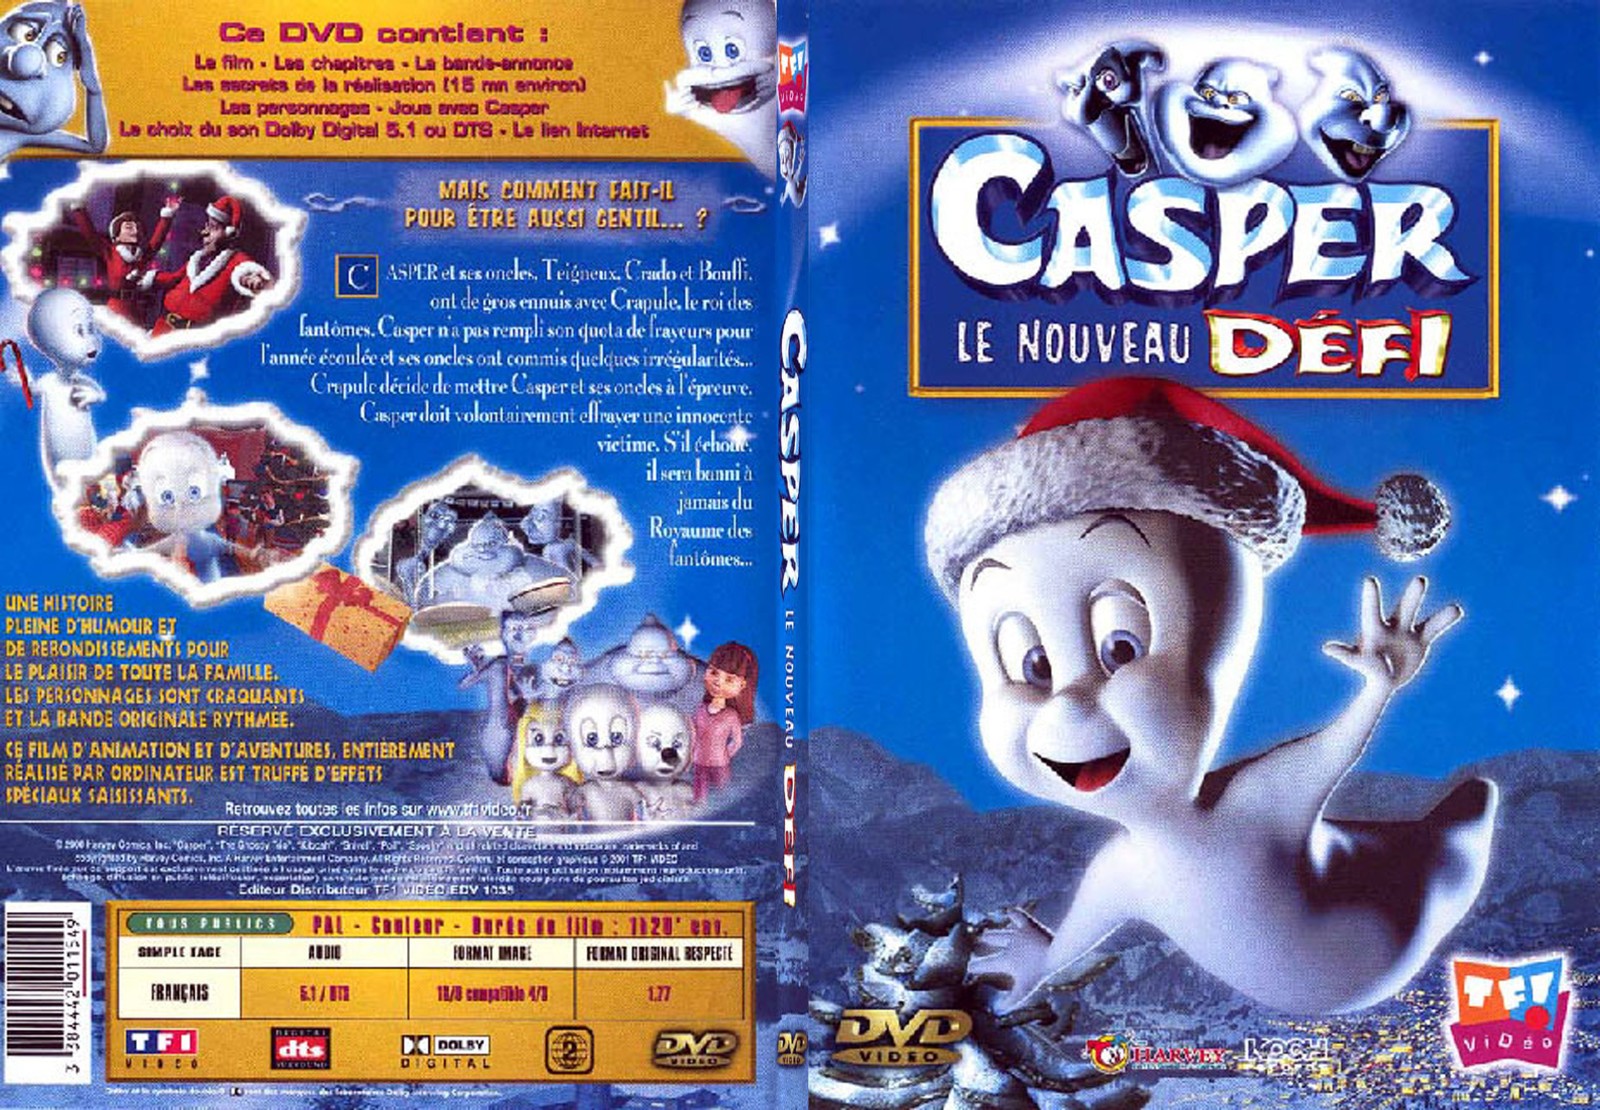 Jaquette DVD Casper le nouveau dfi - SLIM